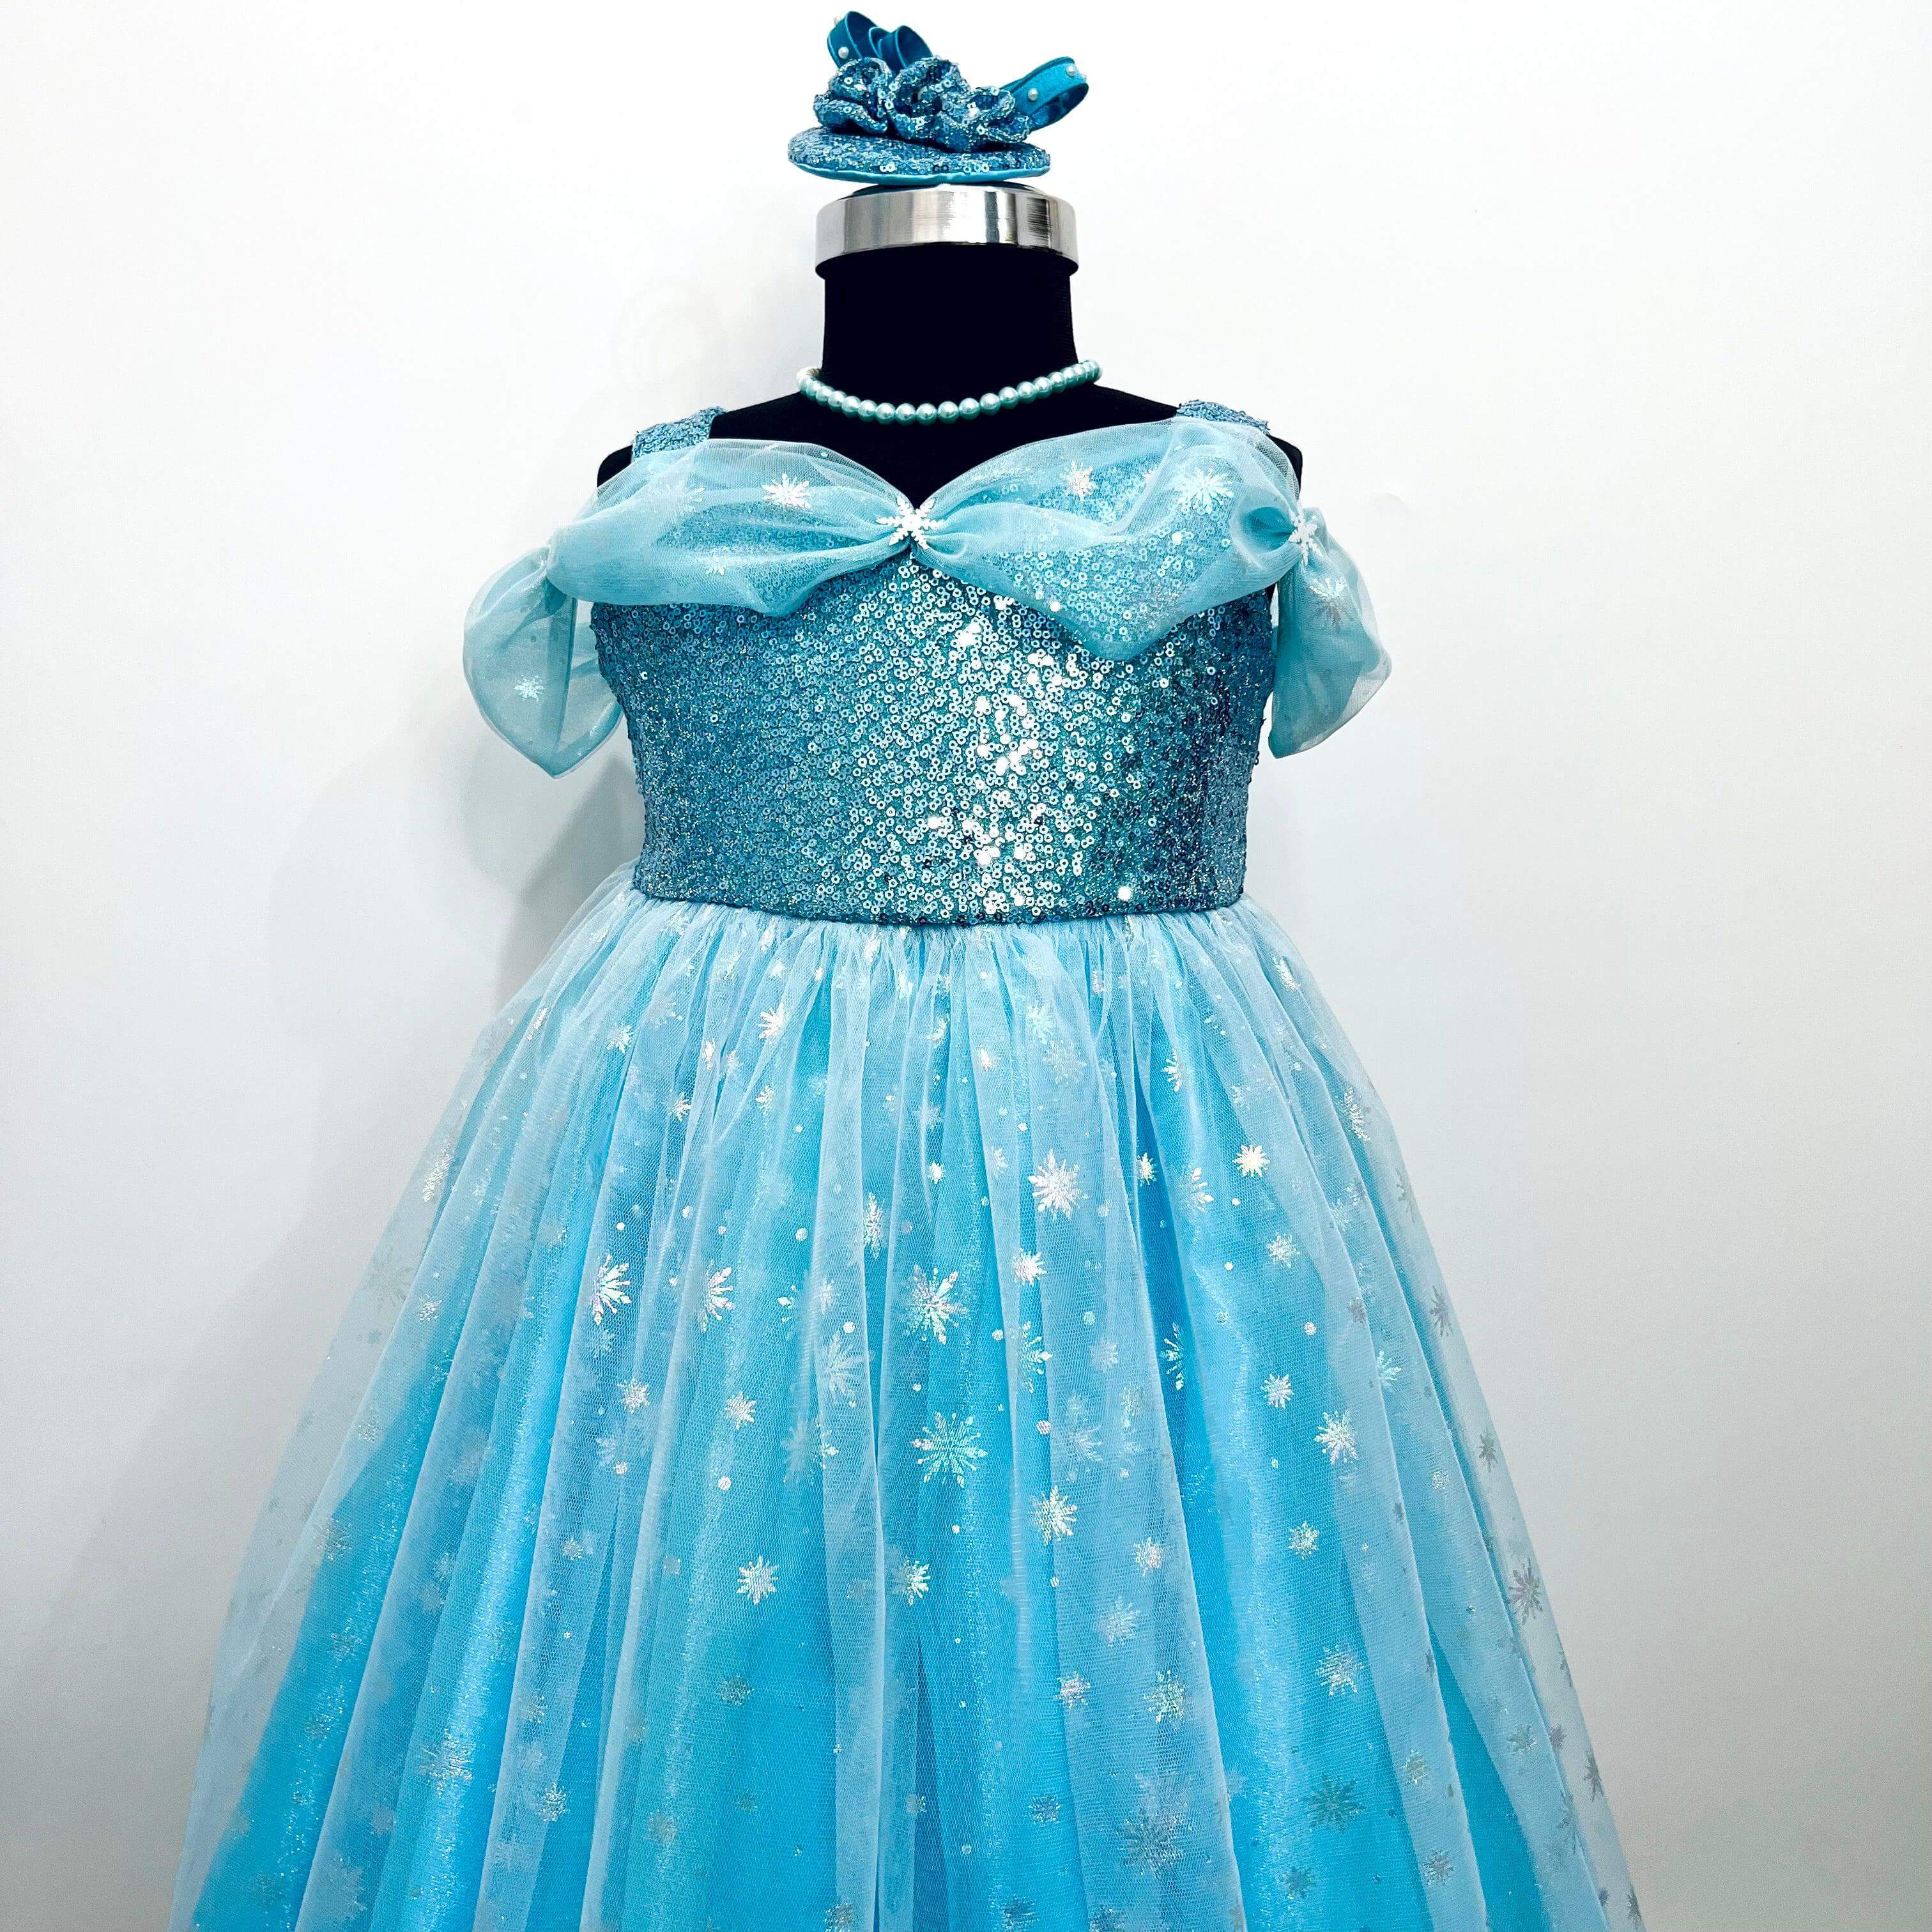 Disney Inspired Frozen Elsa Dress for Birthday Girl Online